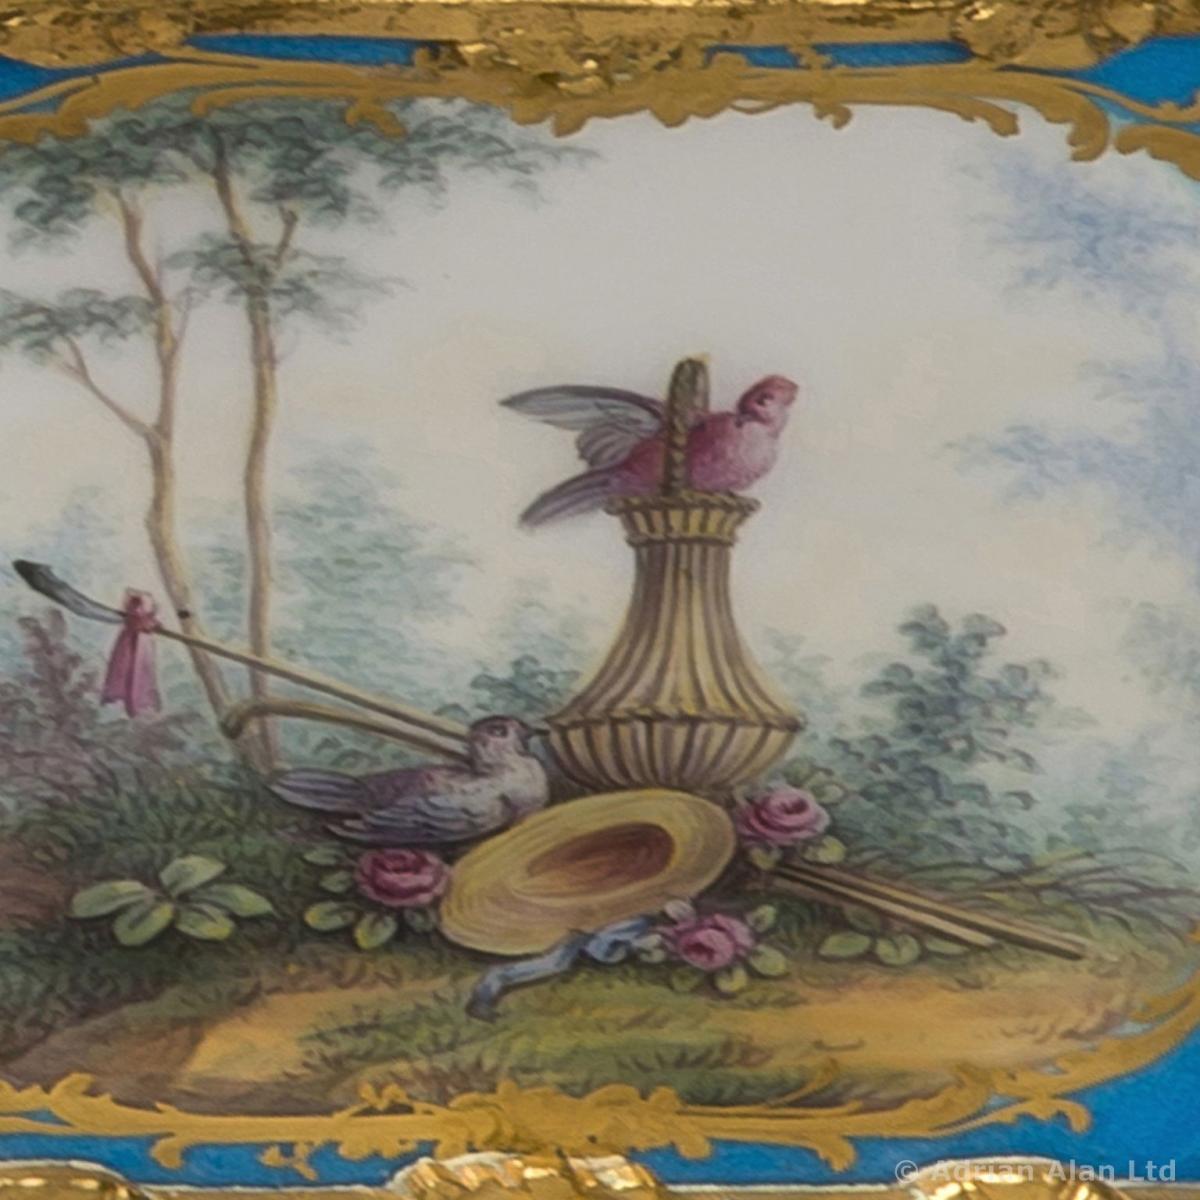 Sèvres-Style Porcelain Table Box